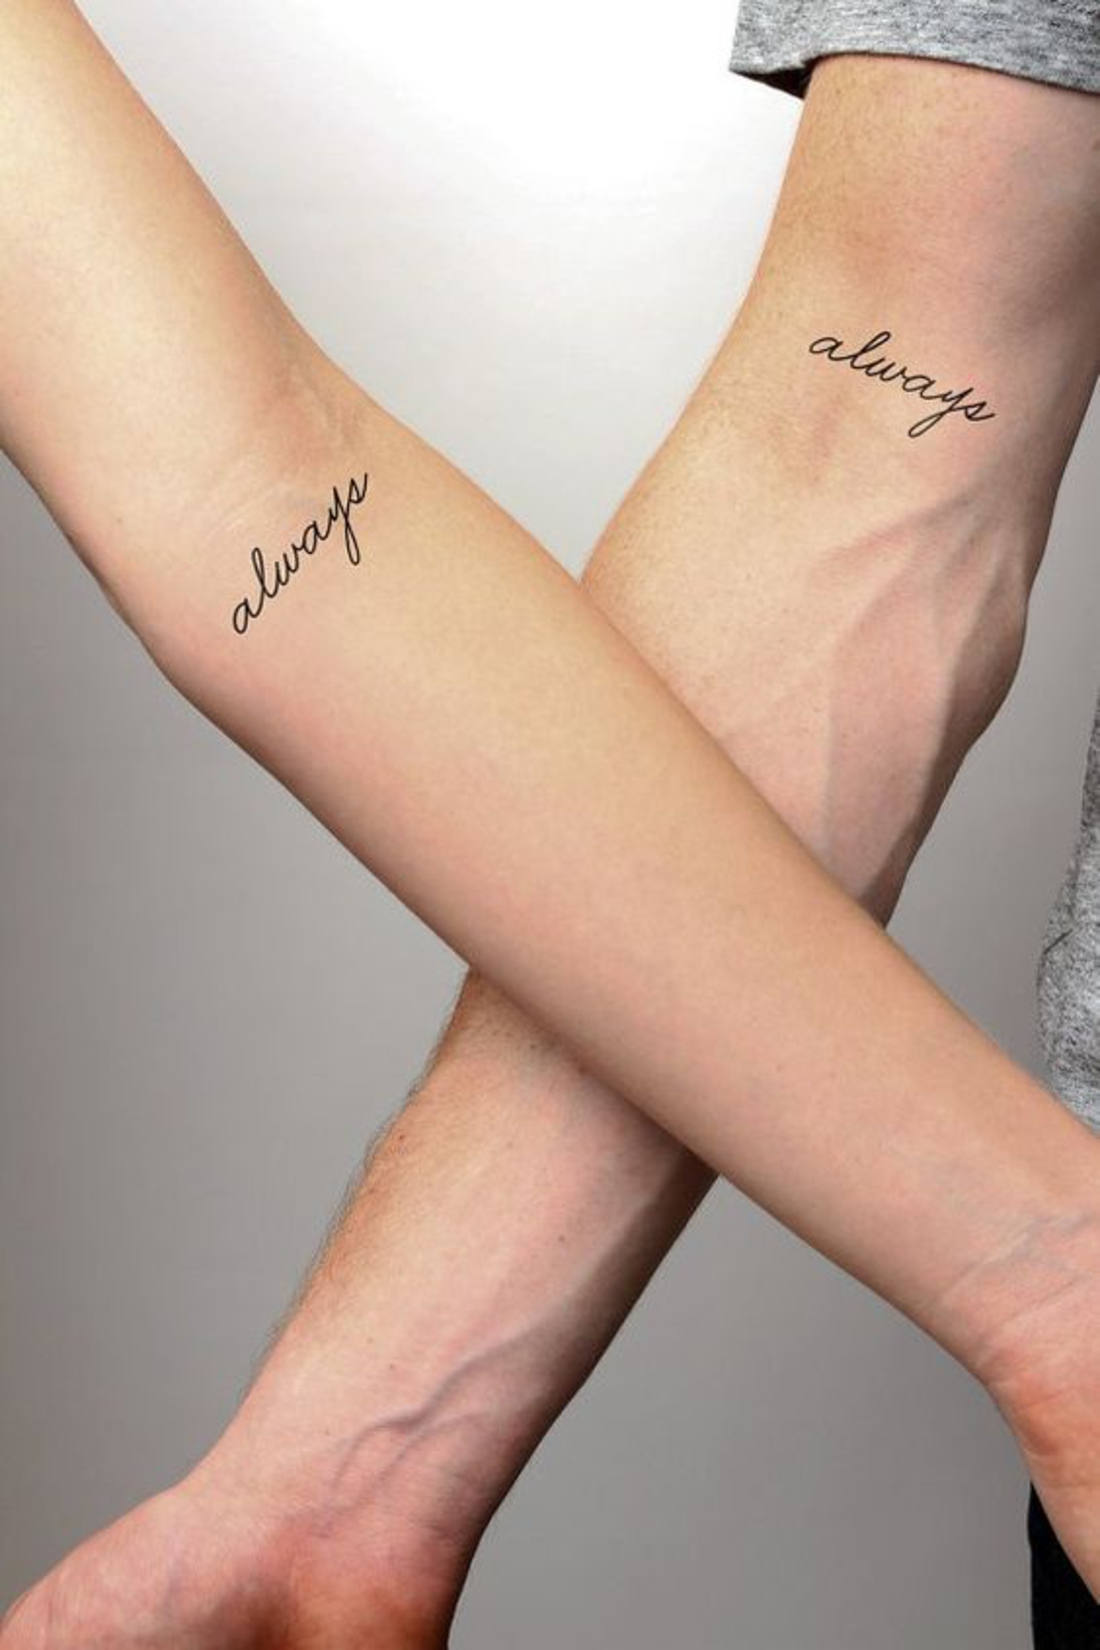 tatuajes en pareja, interesante idea de escribir siempre en las manos, romántico, interesante